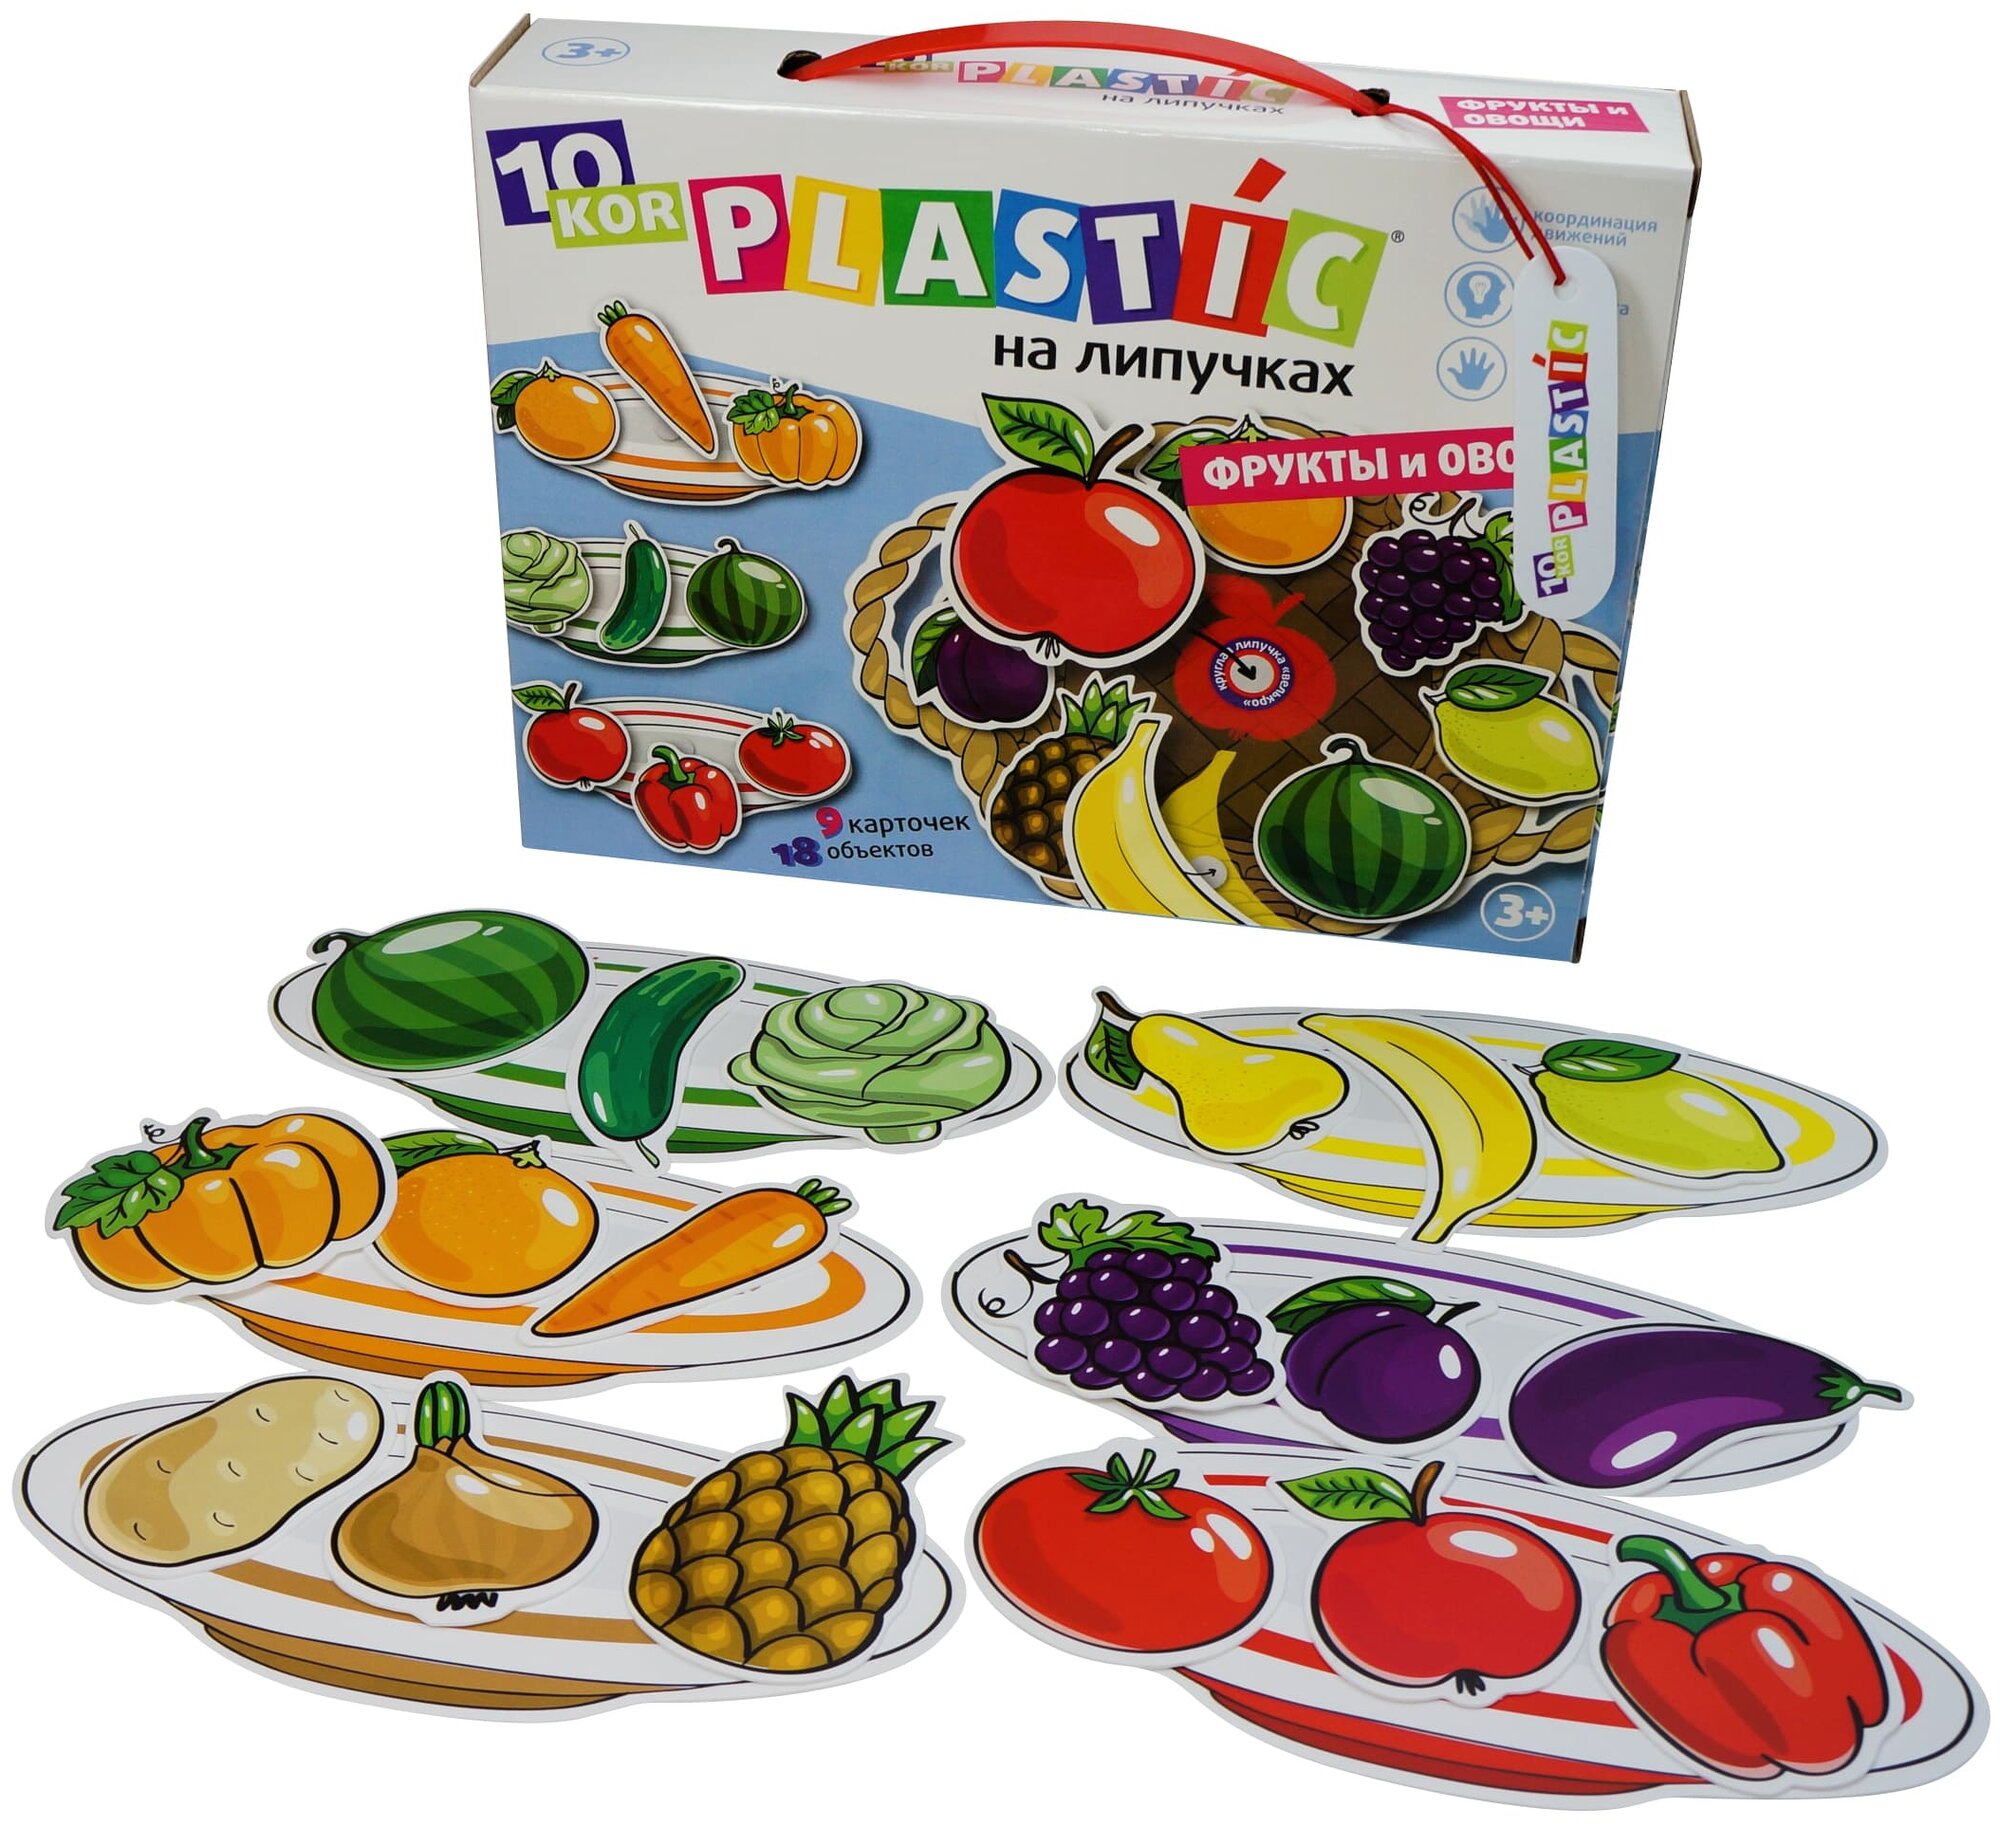 Настольная игра Десятое Королевство Plastic на липучках Фрукты и овощи - фото №3